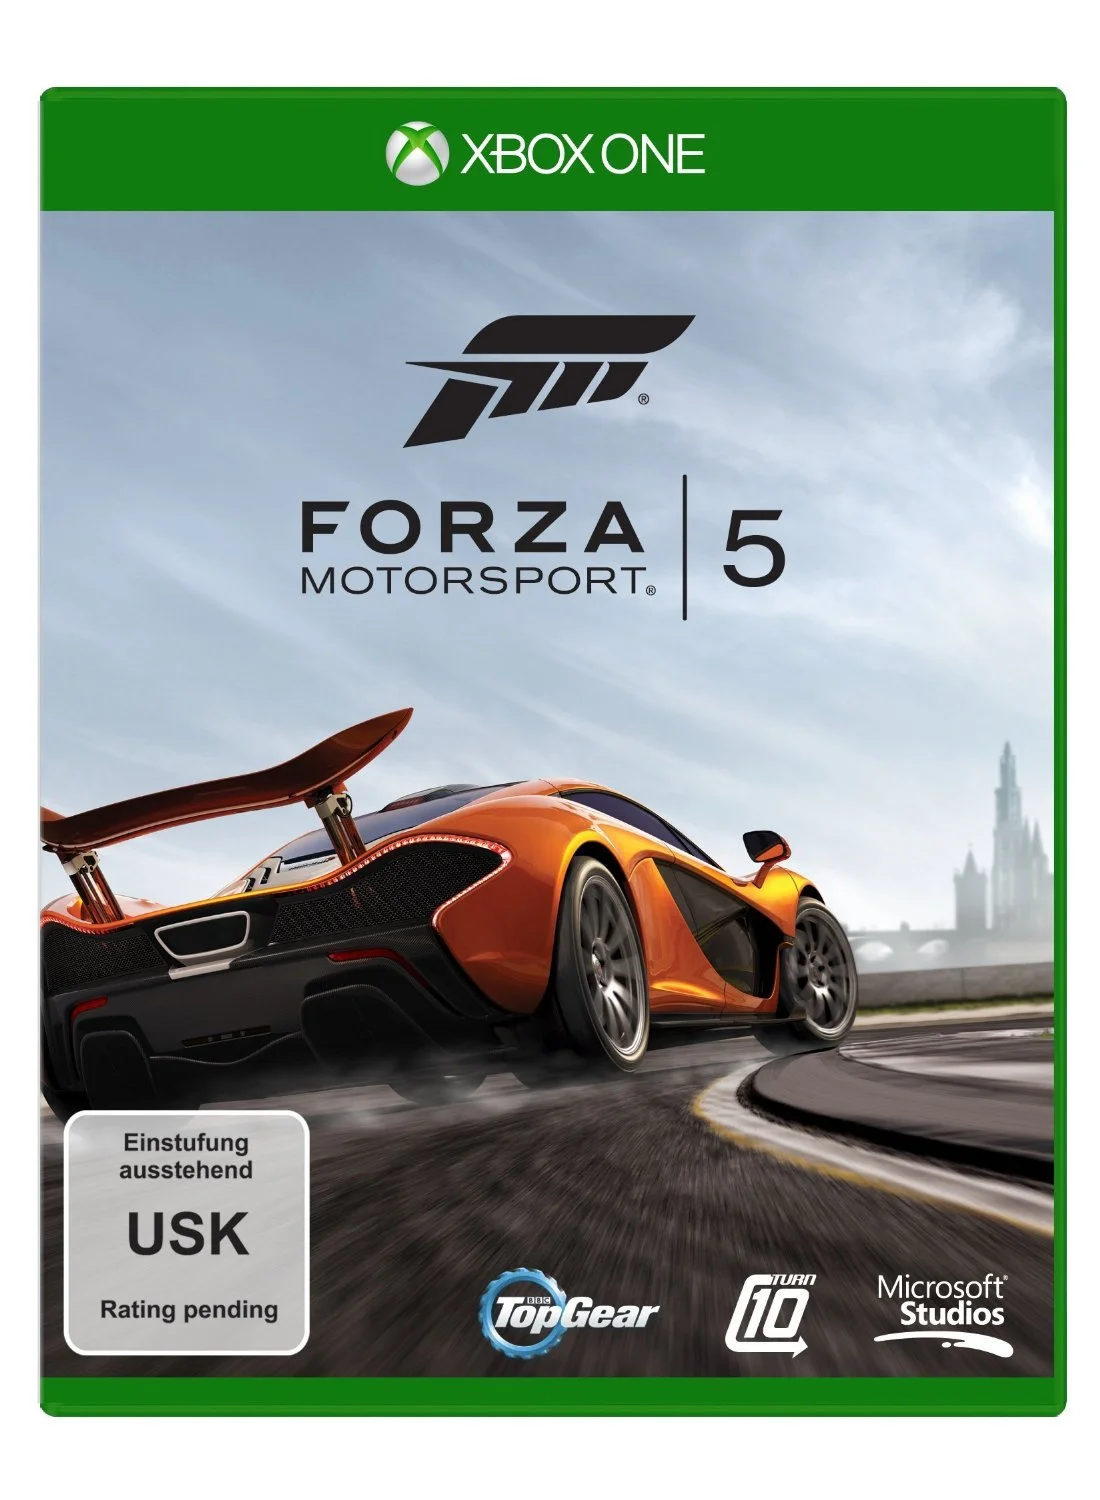 Опубликован дизайн дисков для Xbox One - фото 2